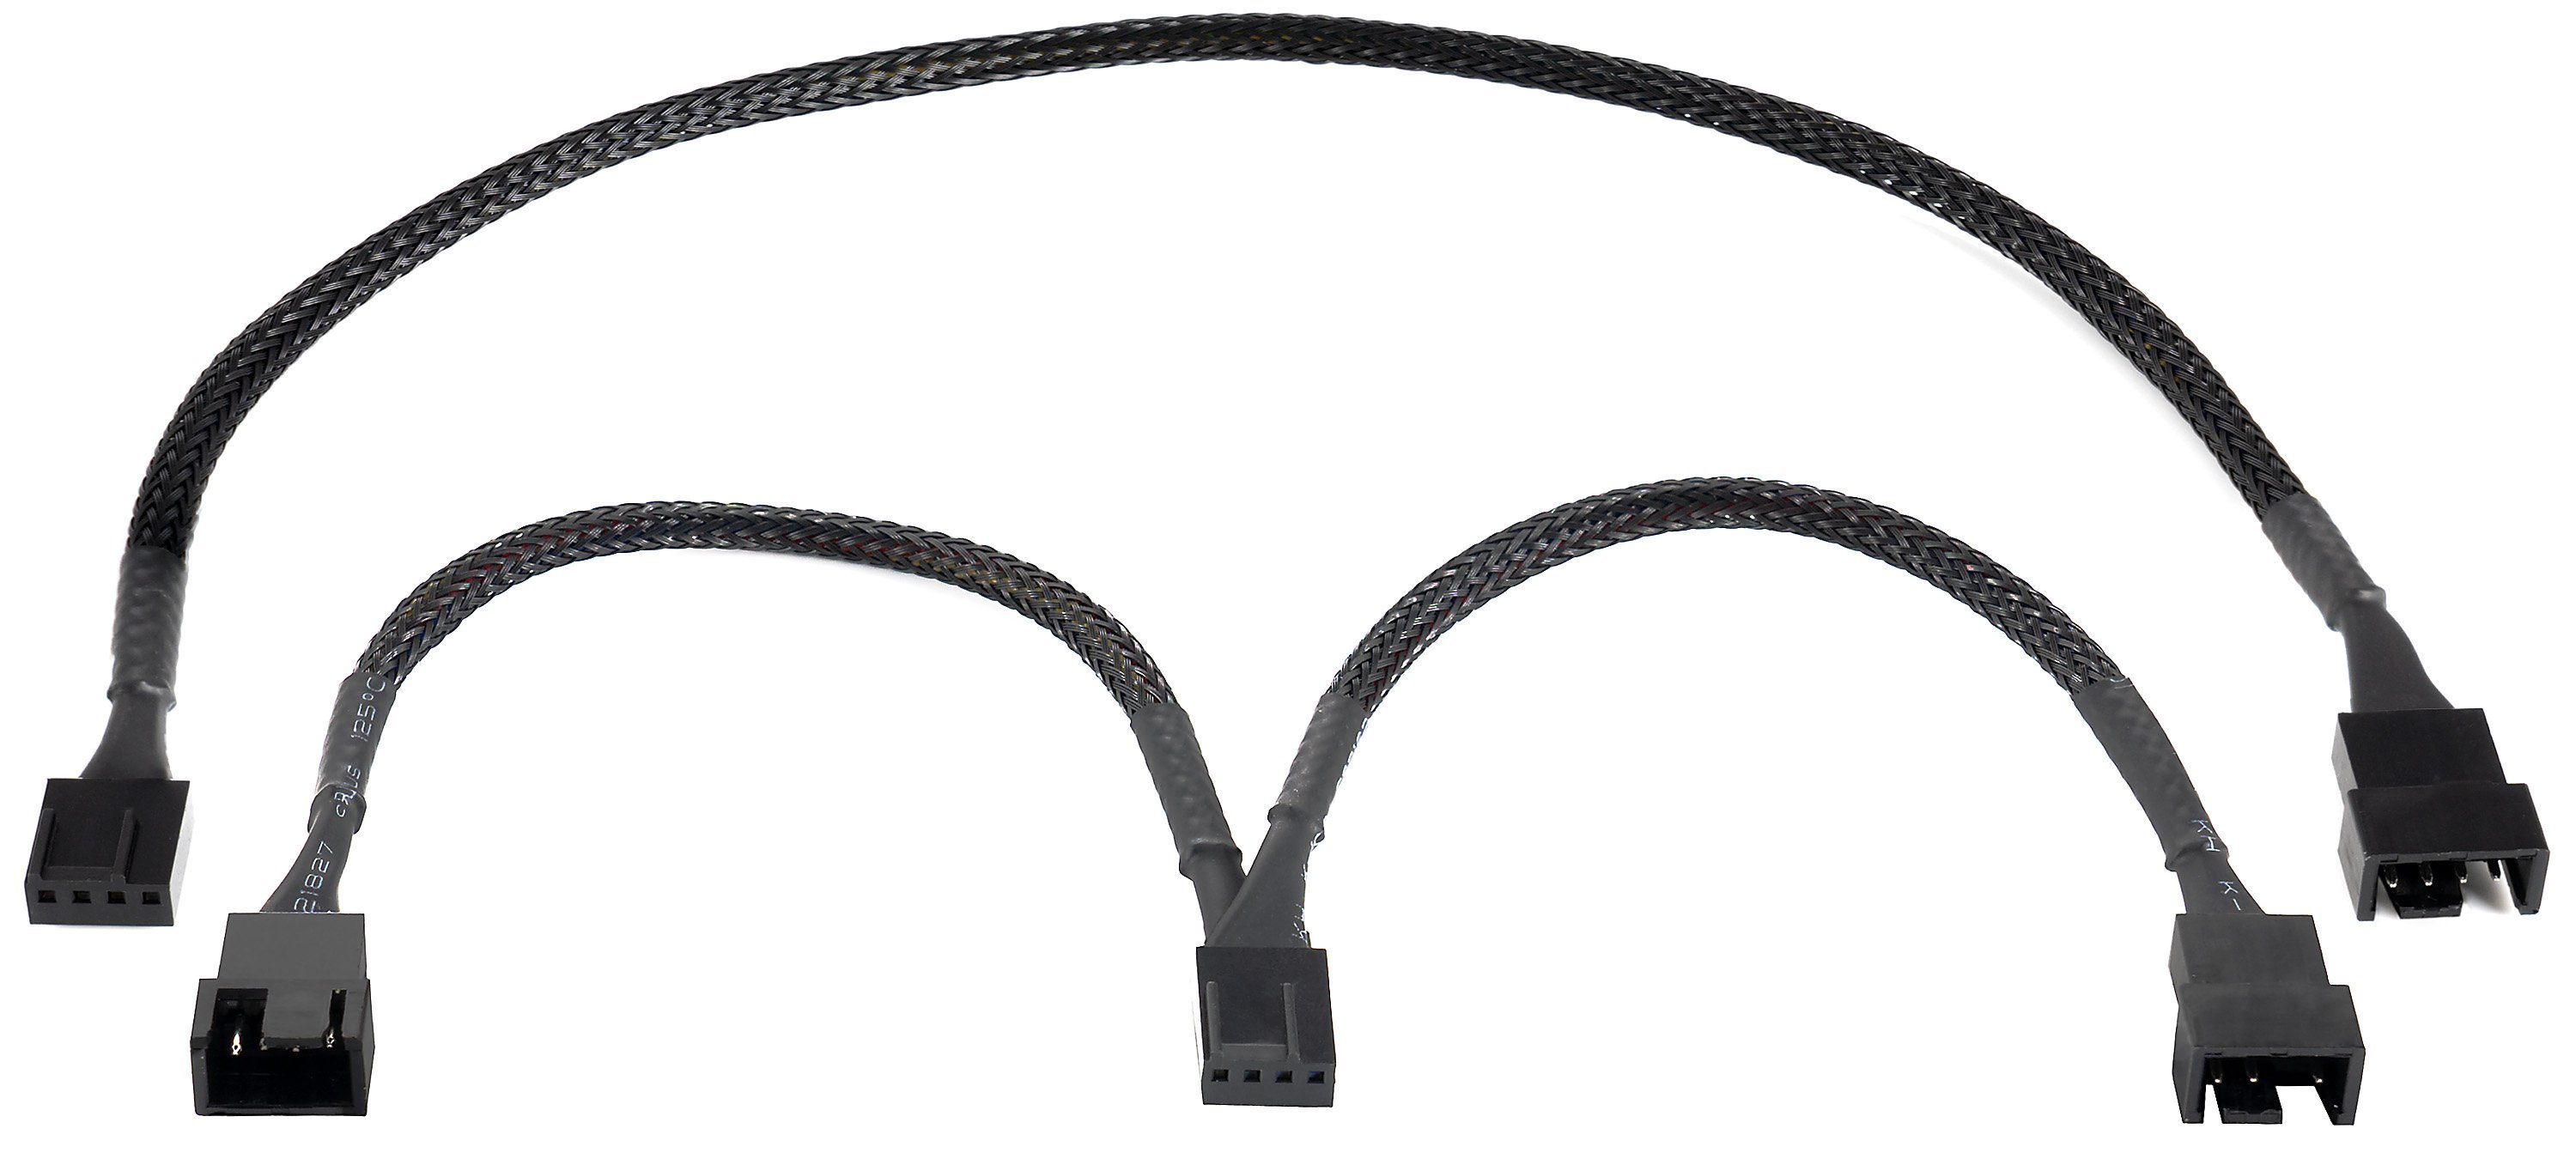 Poppstar PWM Lüfter Kabel Set 4-Pin (15cm Y-Kabel + 30cm  Verlängerungskabel) Computer-Kabel, (15 cm), zum Anschluss von Prozessor-  und Gehäuselüfter an Mainboard